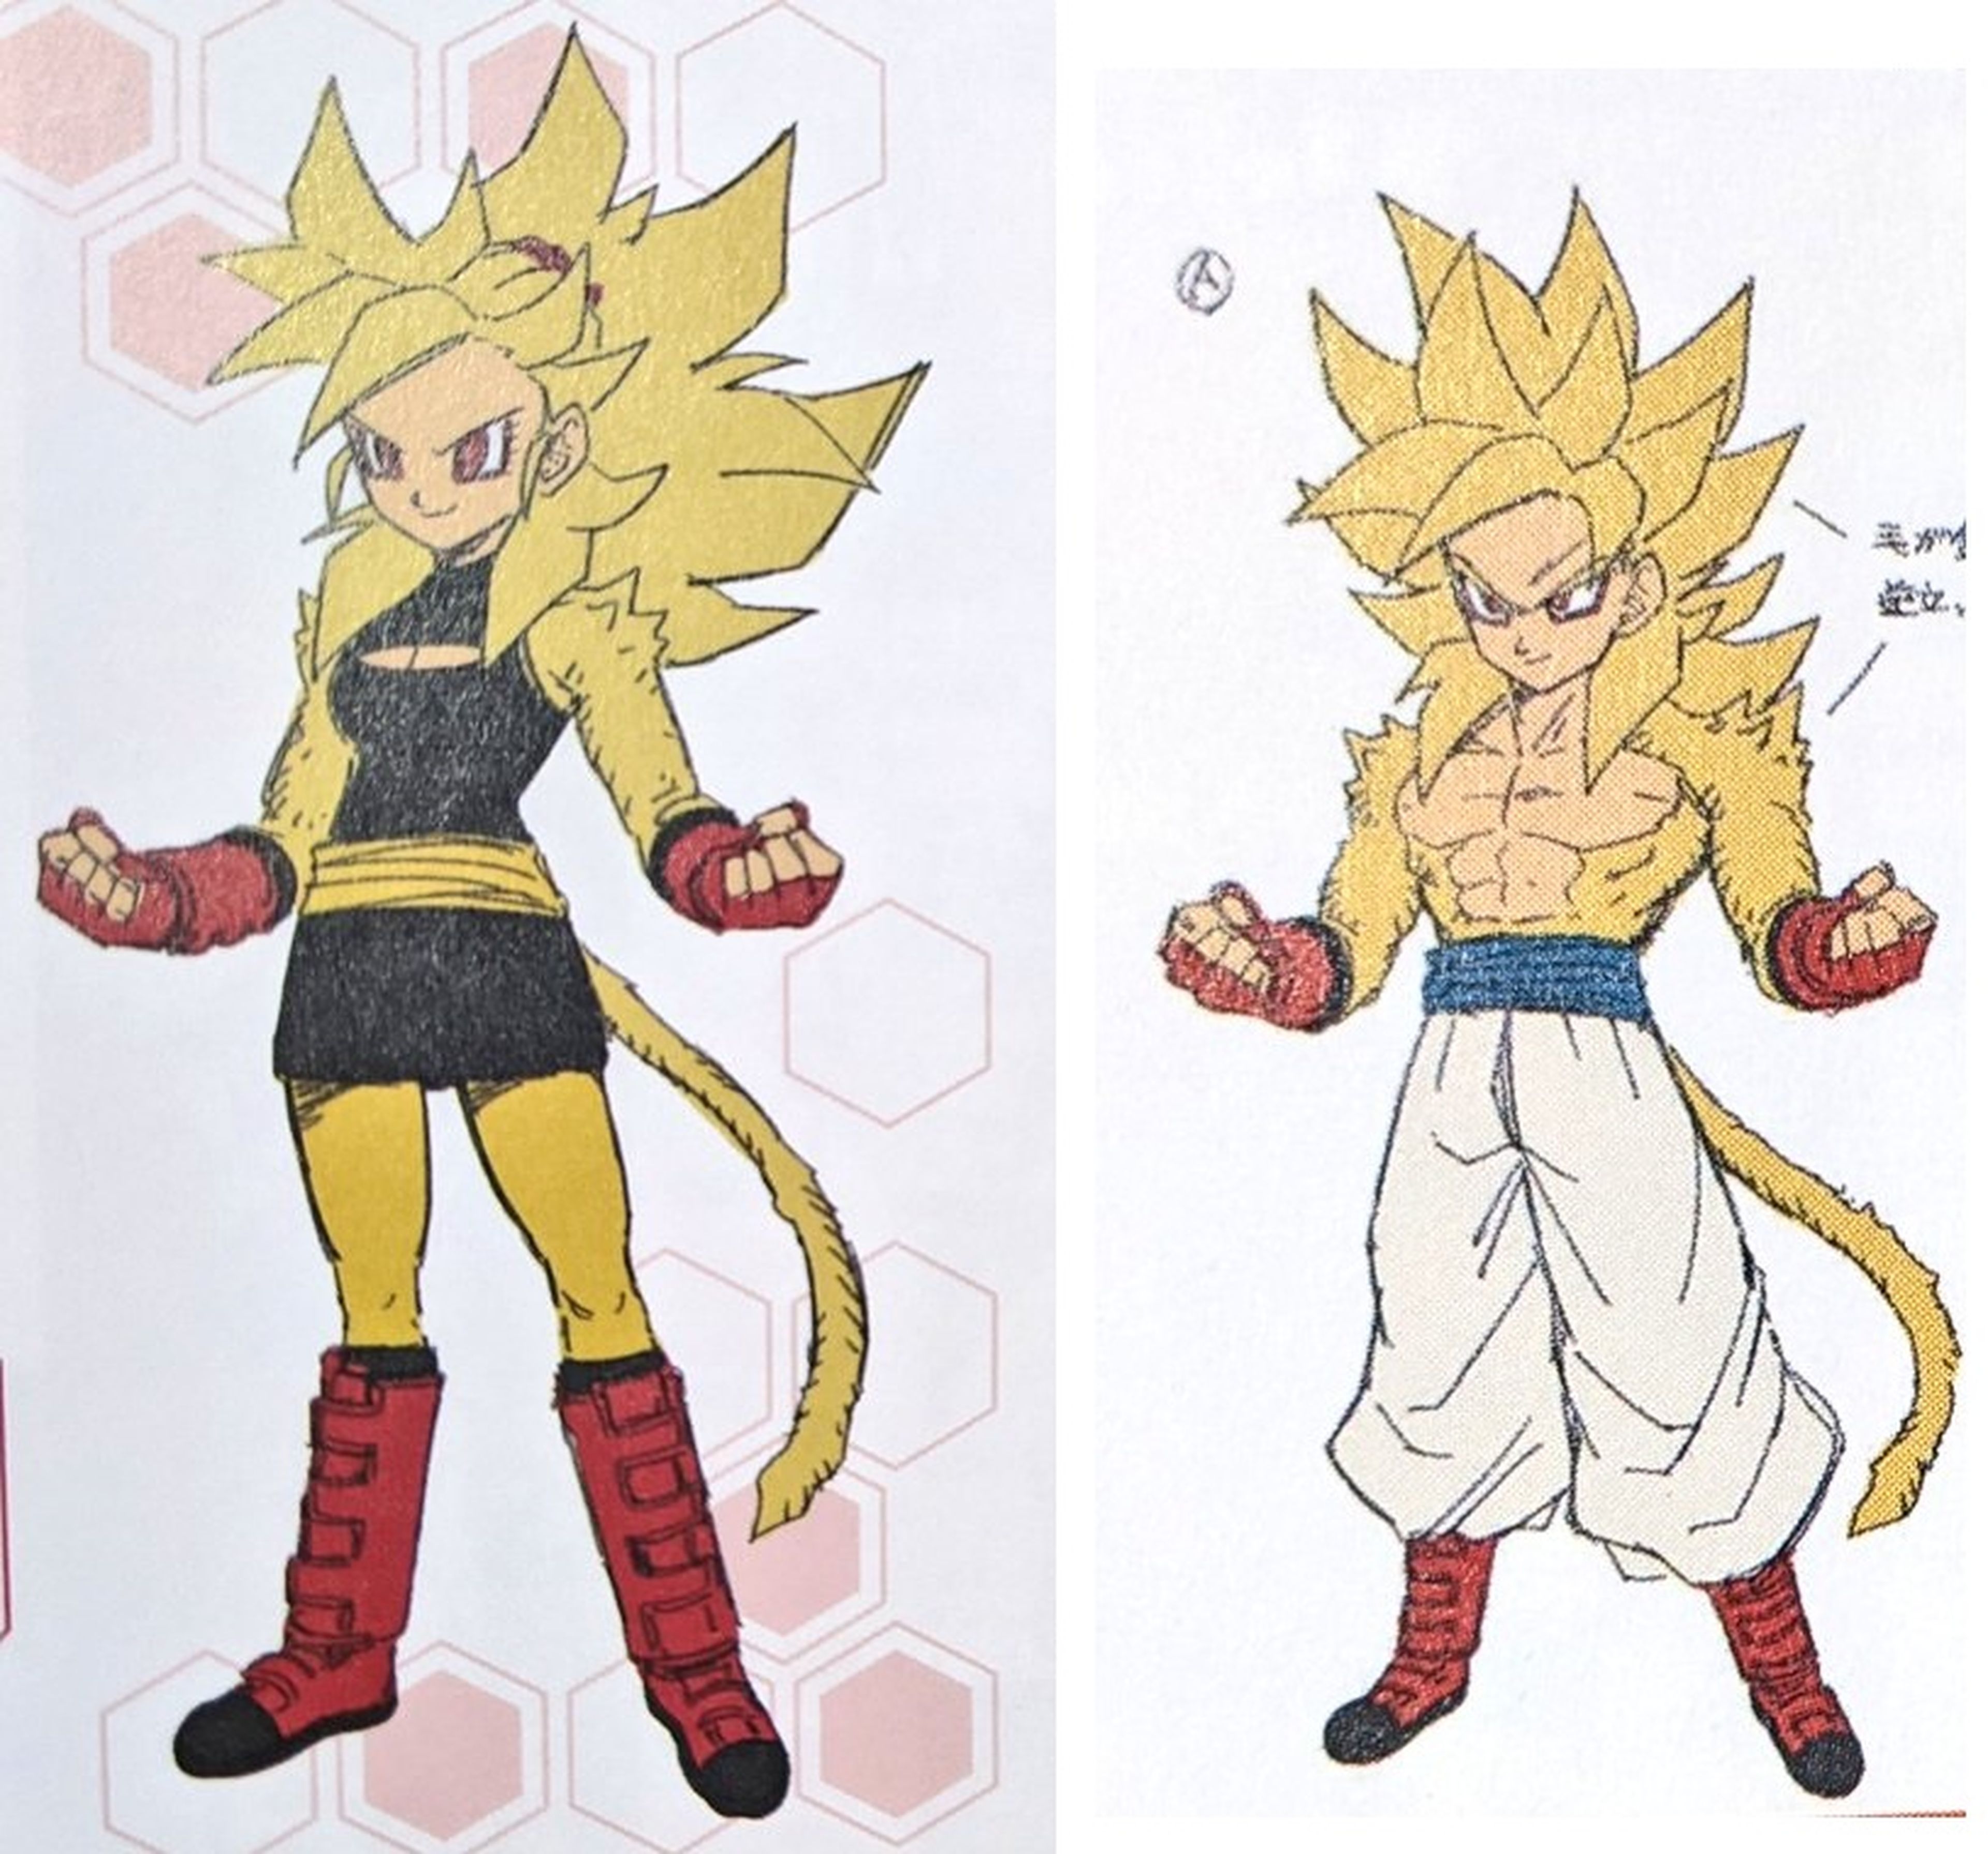 Dragon Ball - Desvelado el diseño secreto oficial del Super Saiyan 4 de pelaje dorado